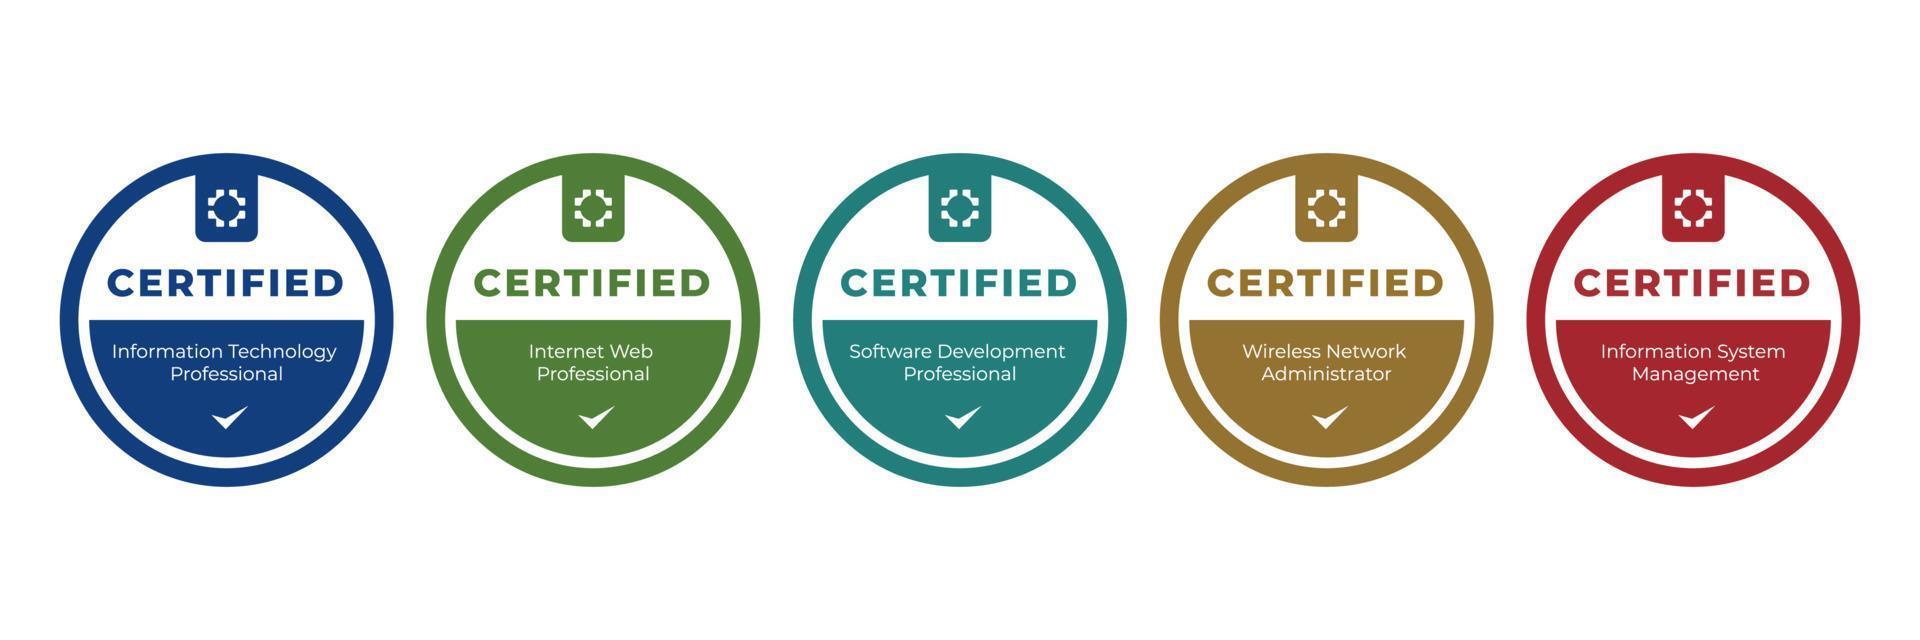 modèle de qualification de technologie de l'information certifié par badge numérique. certificat de logo d'illustration vectorielle avec un design de forme ronde. vecteur